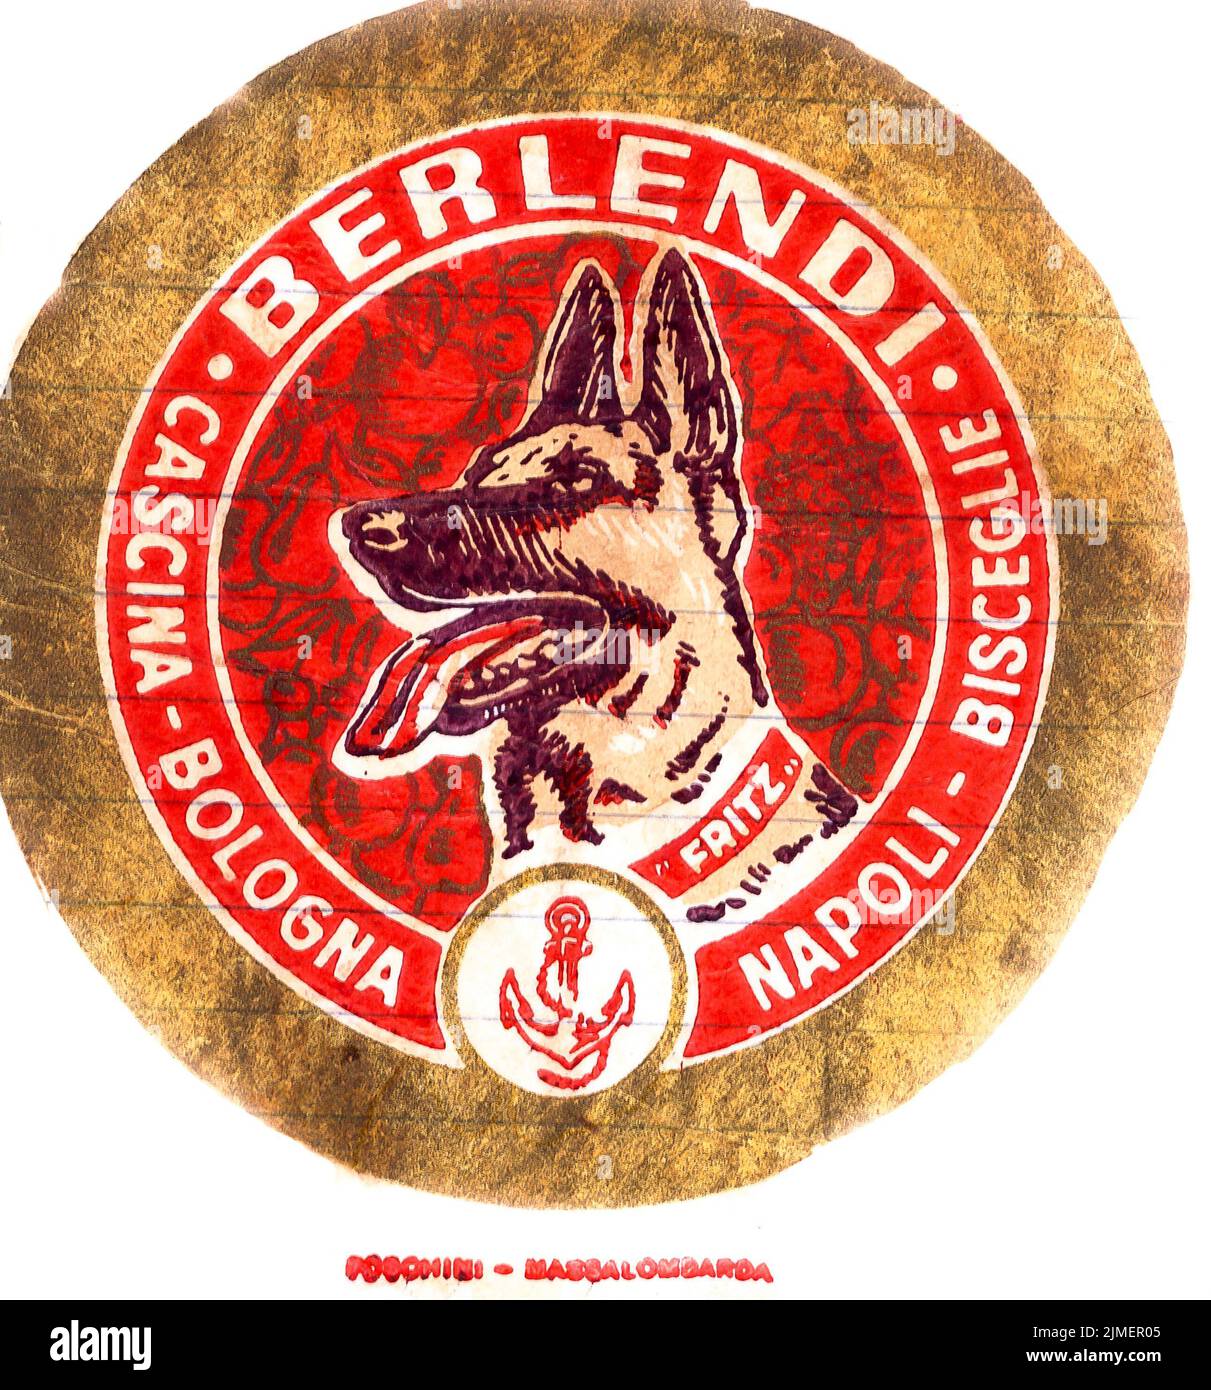 Envoltorio de papel para pañuelos de frutas frescas, de mediados de 1950s, Inglaterra, con marca comercial del cultivador. Berlendi, Bolonia, Nápoles. Cabeza de perro pastor alemán. Rojo, dorado. Foto de stock